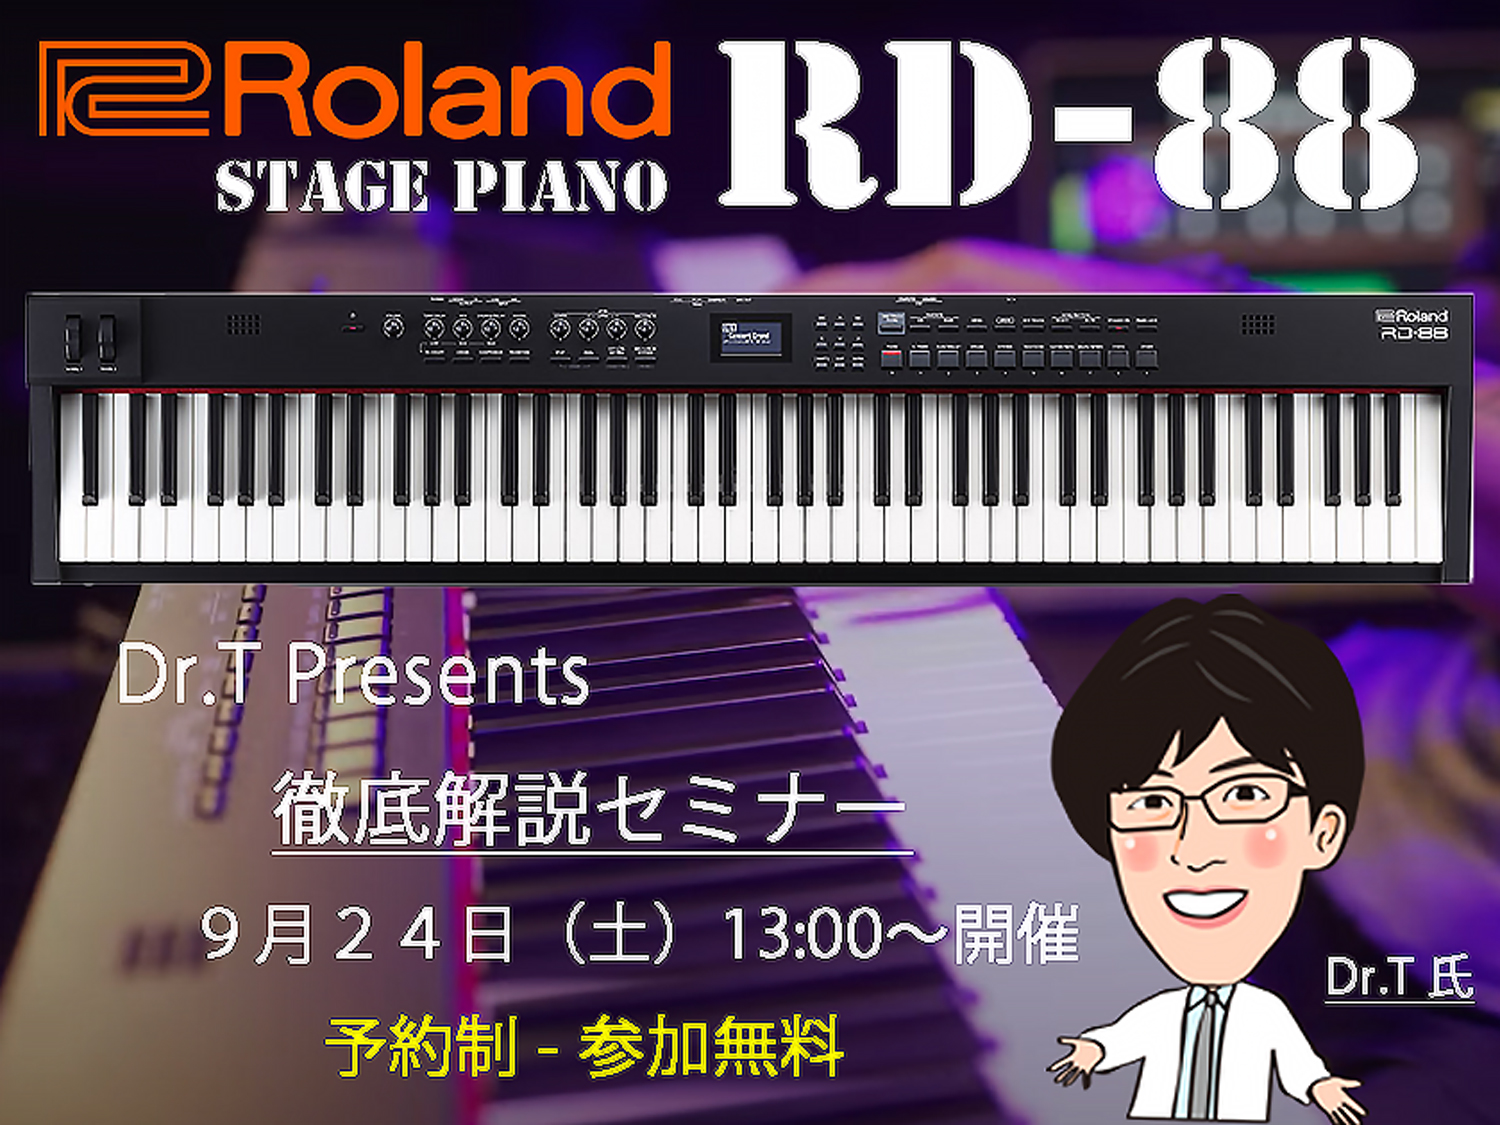 　　　 RD-88 コンパクトステージピアノは自宅練習ライブ、卓録と幅広く対応！ 【プロフィール】Roland Planet Staff | 栃木　大佑＜ドクターT＞（とちぎ　だいすけ）・島村楽器名古屋パルコ店担当のローランド・プラネットスタッフ。・ローランドのデジタル関連製品の専任スタッフとして勤 […]